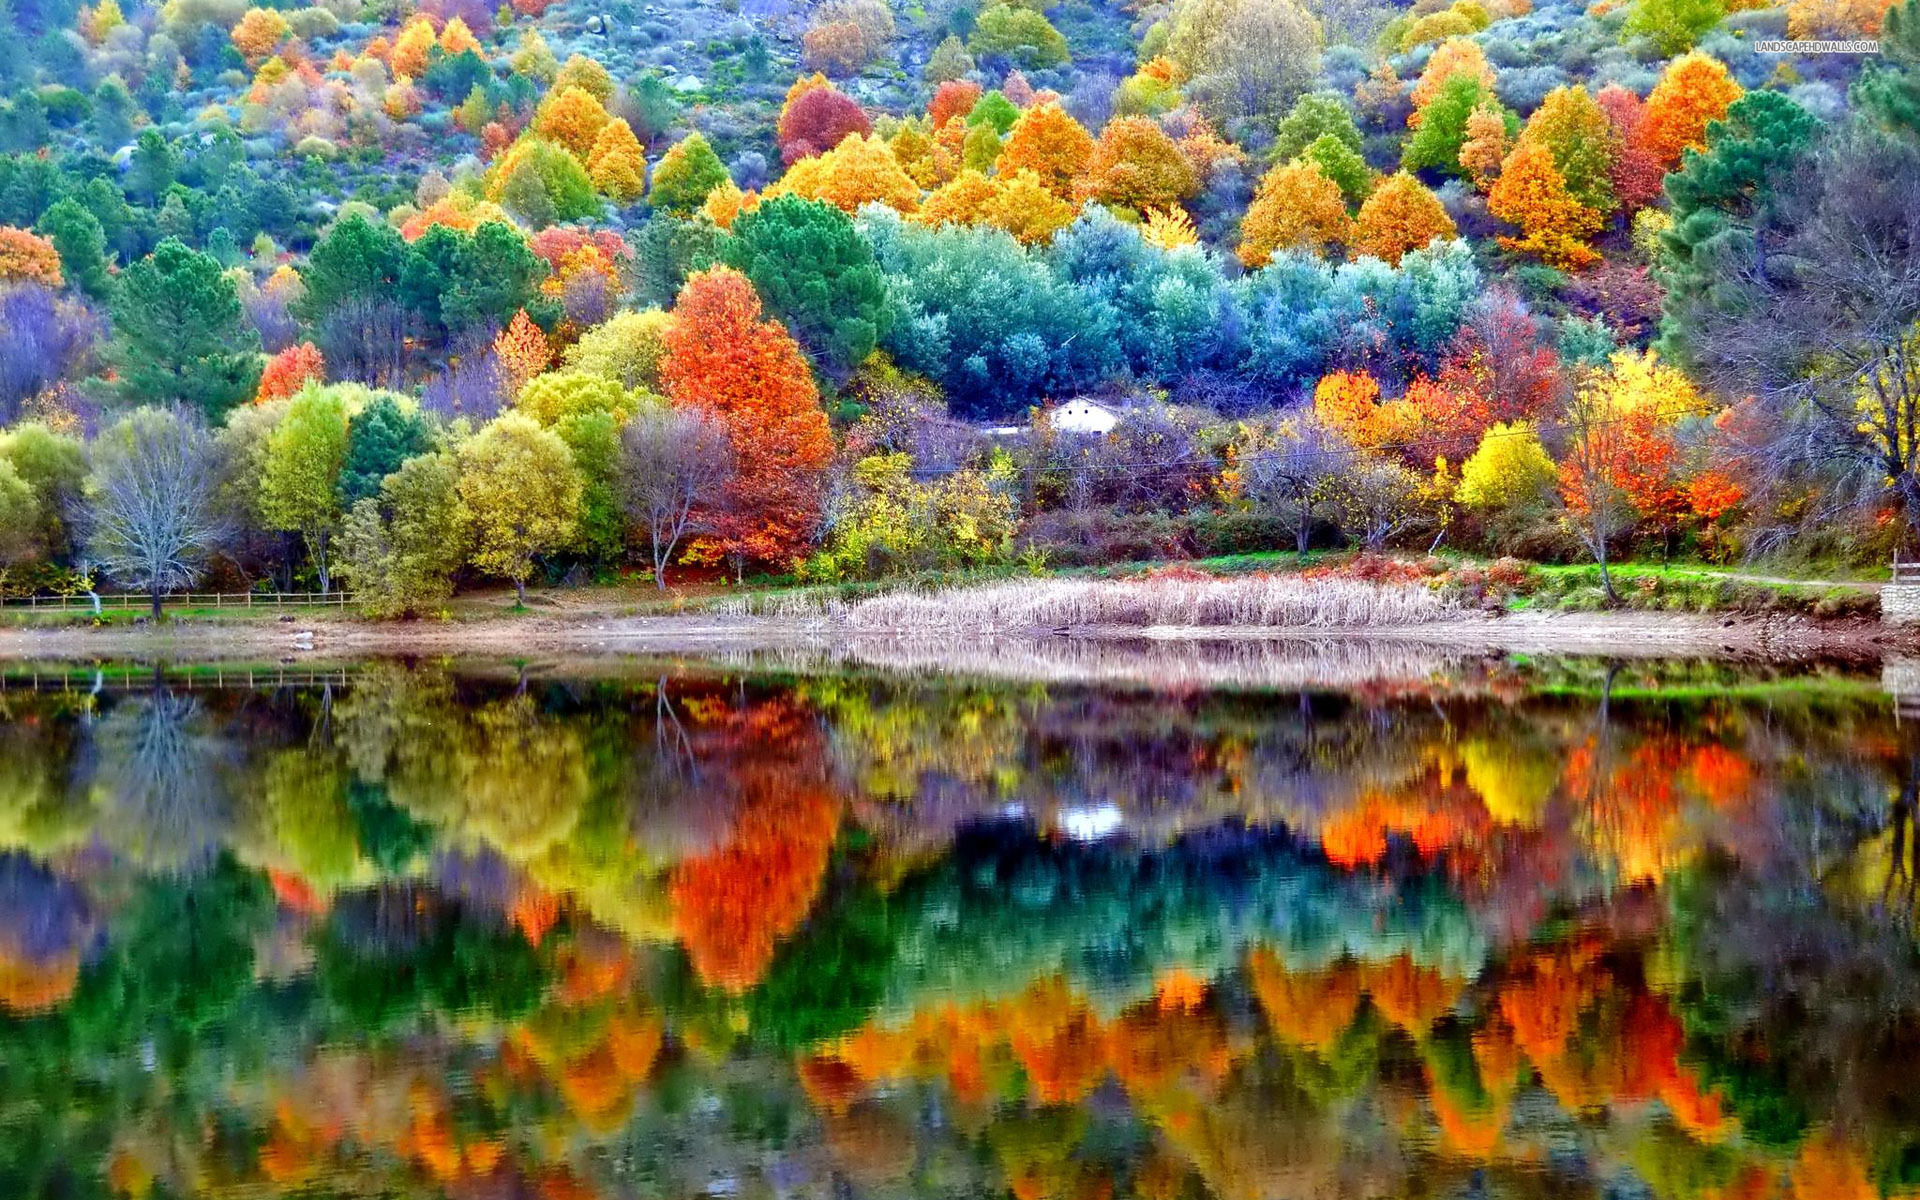 Autumn Landscape Wallpapers